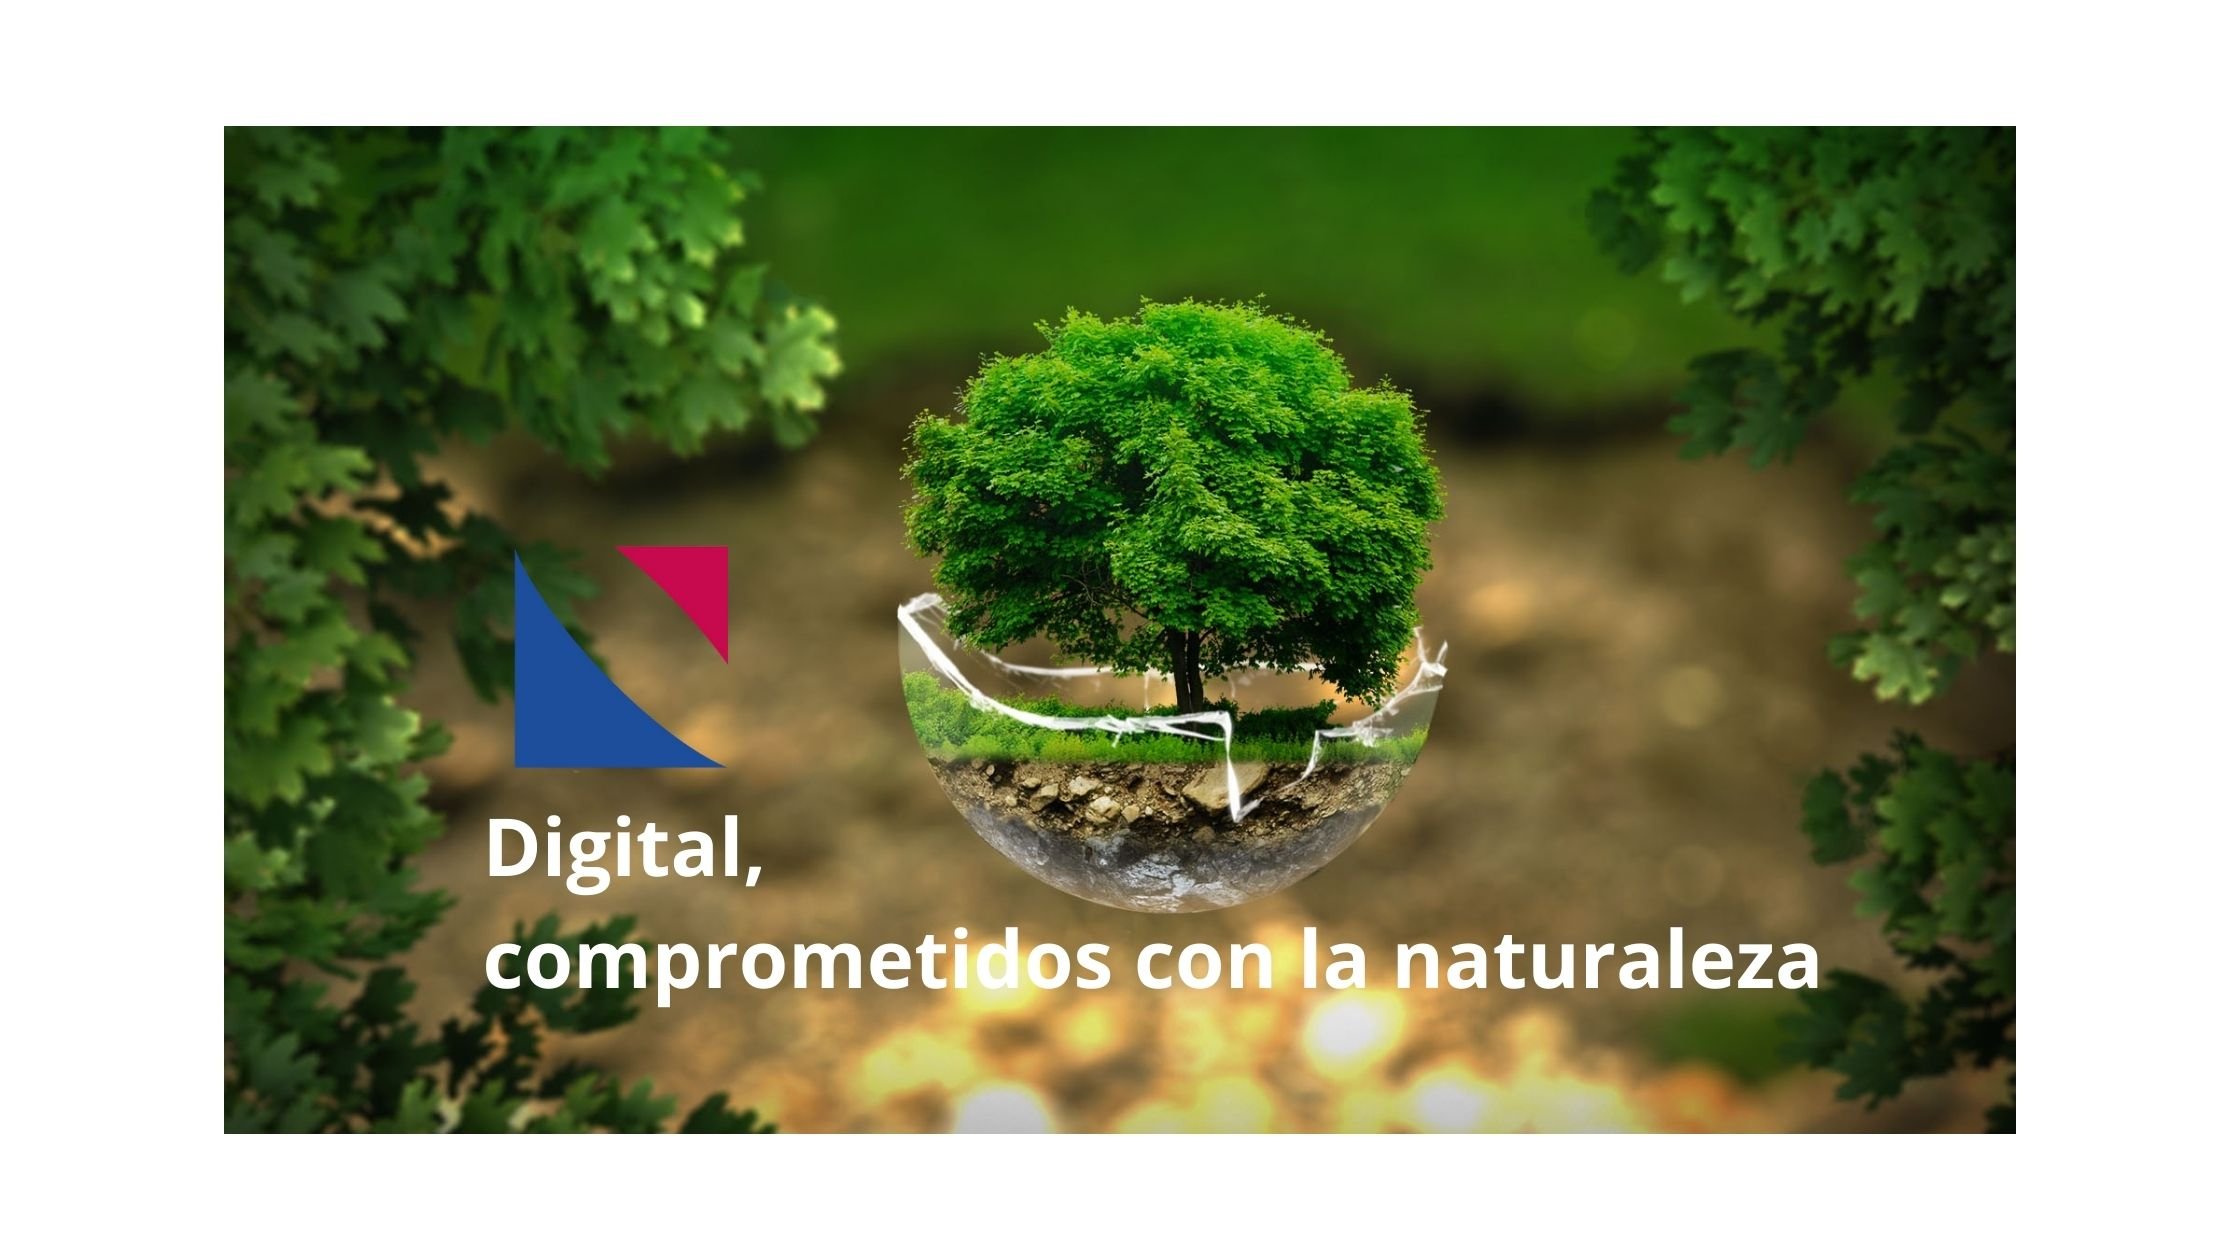 Digital, comprometidos con la naturaleza